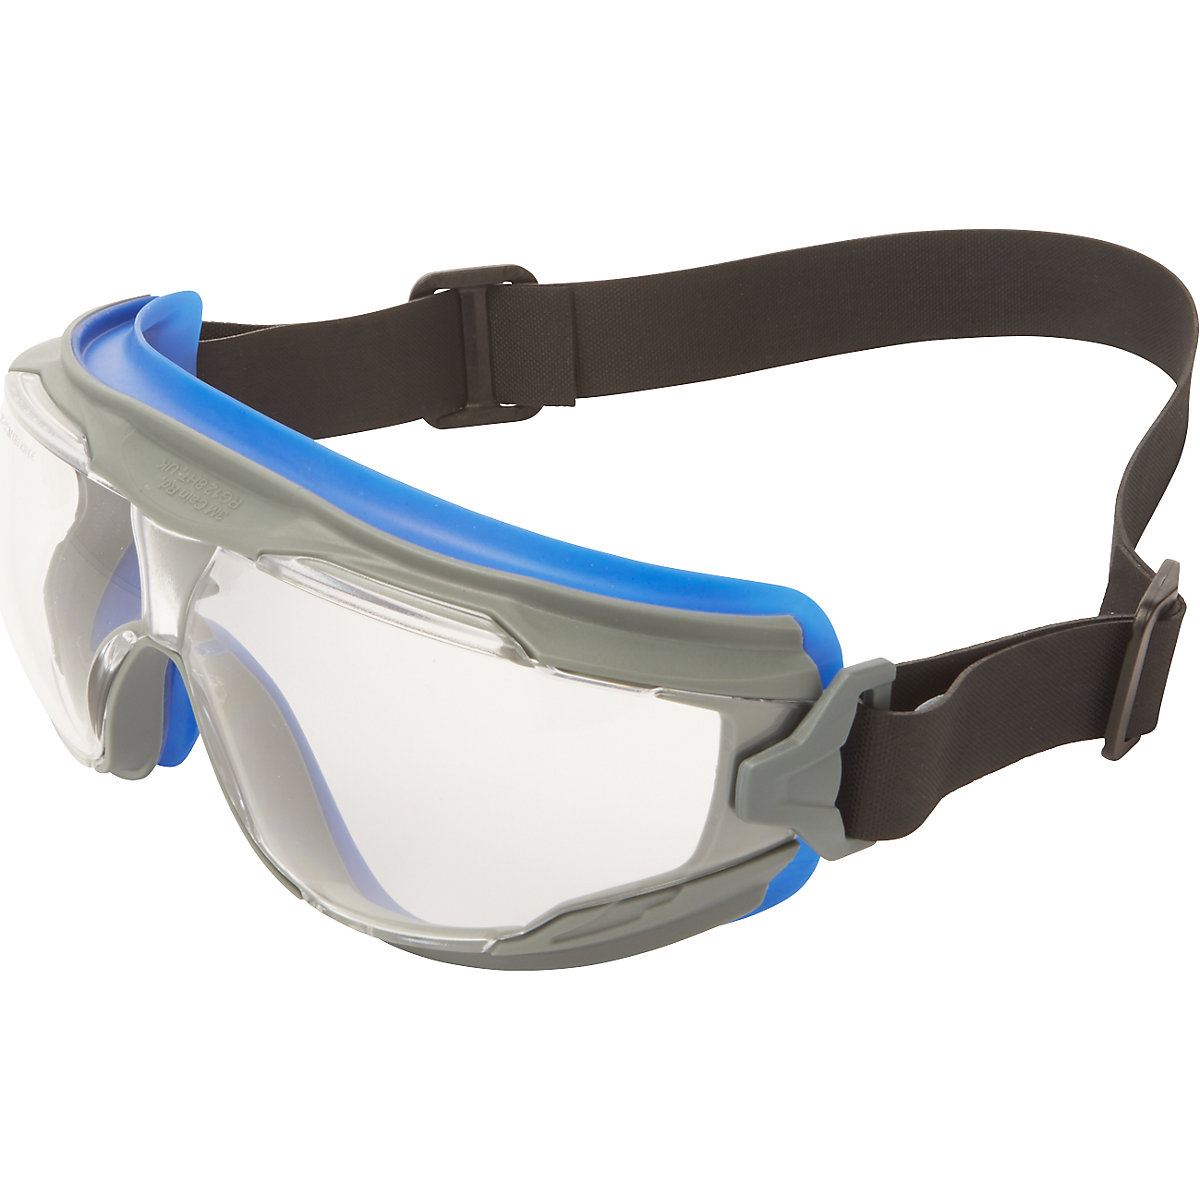 3M Vollsichtbrille Goggle Gear 500, blauer Rahmen, klar